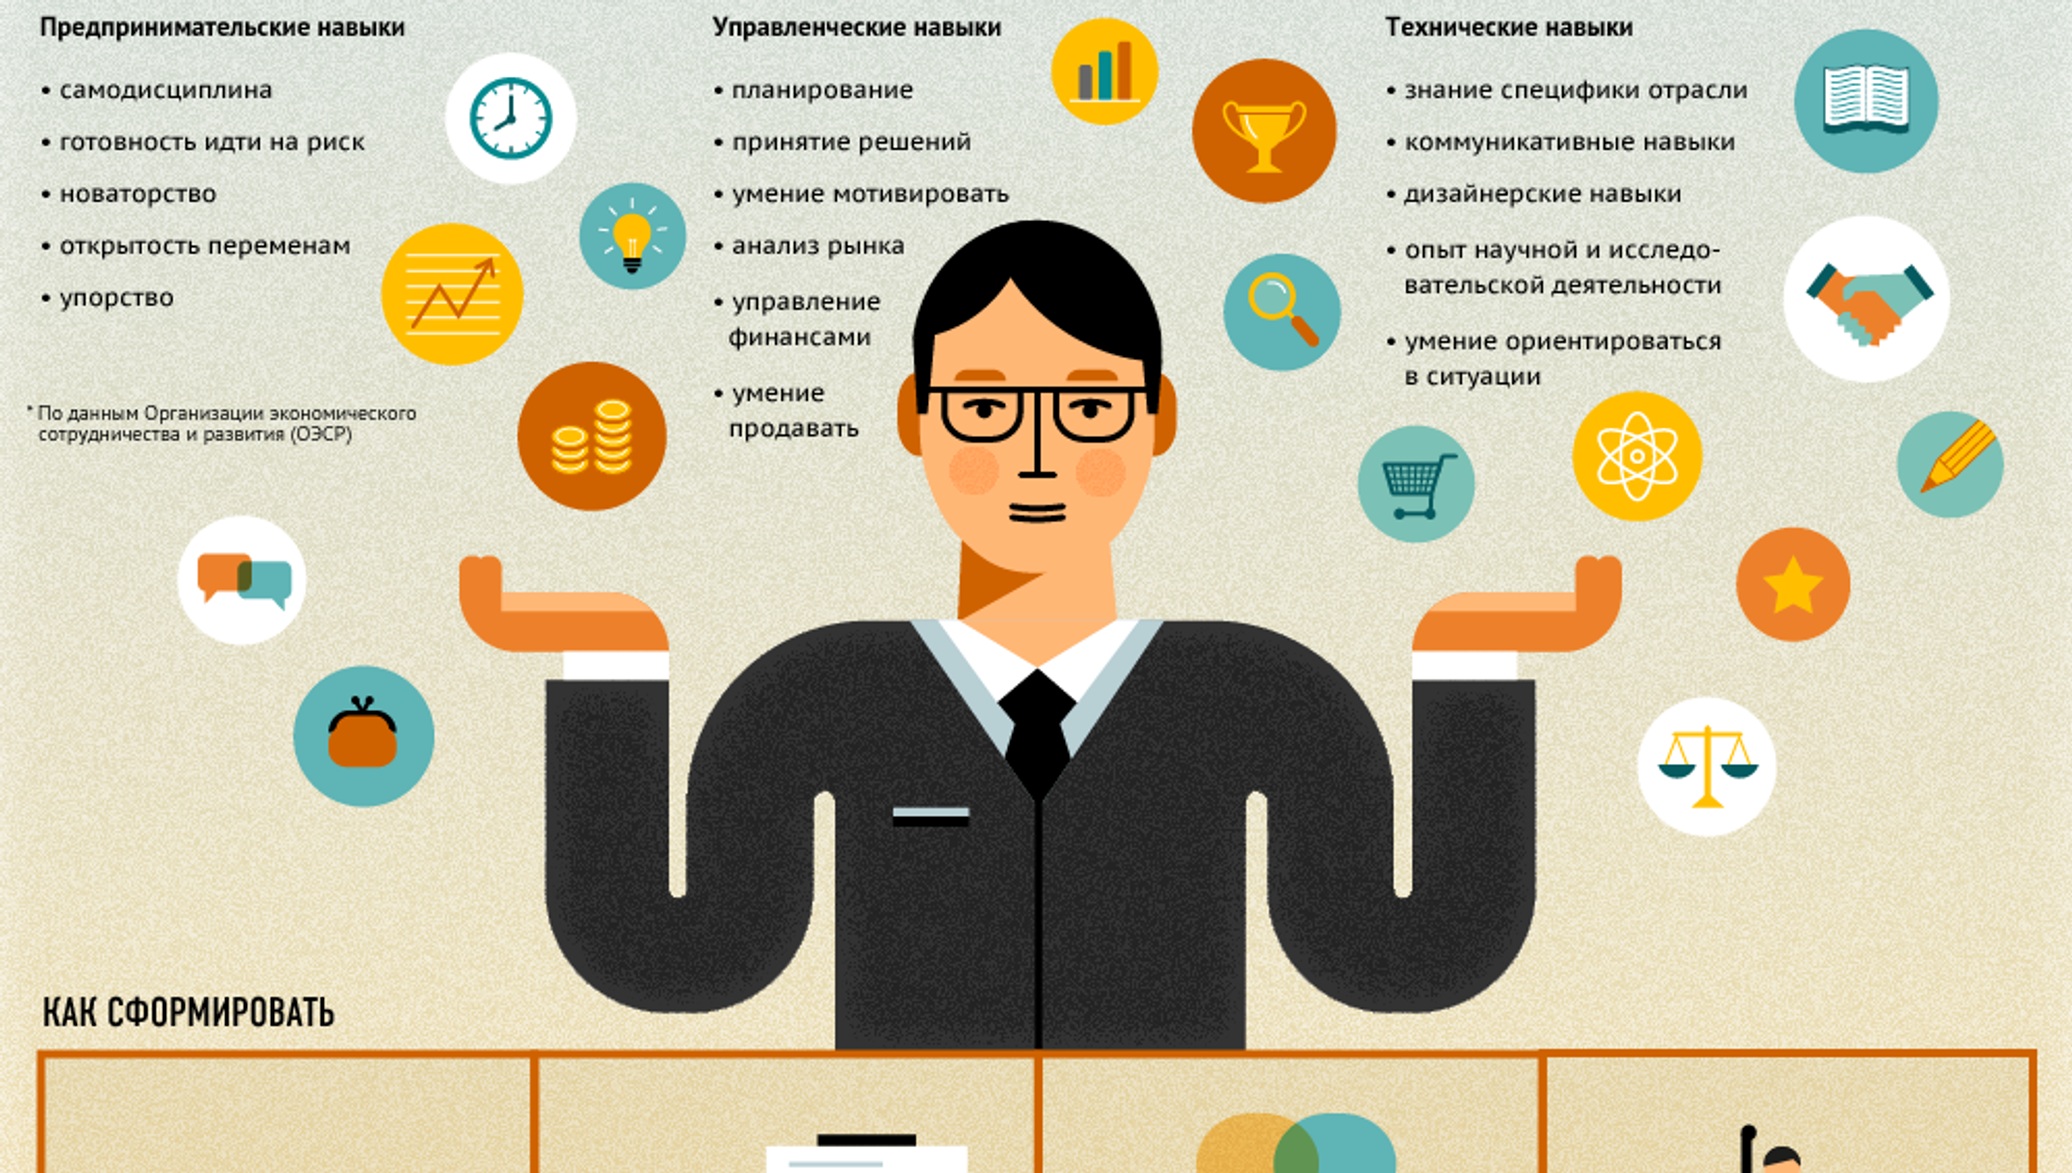 Поможем создать бизнес. Инфографика личности. Навыки предпринимателя бизнесмена. Инфографика бизнес. Портрет в инфографике.